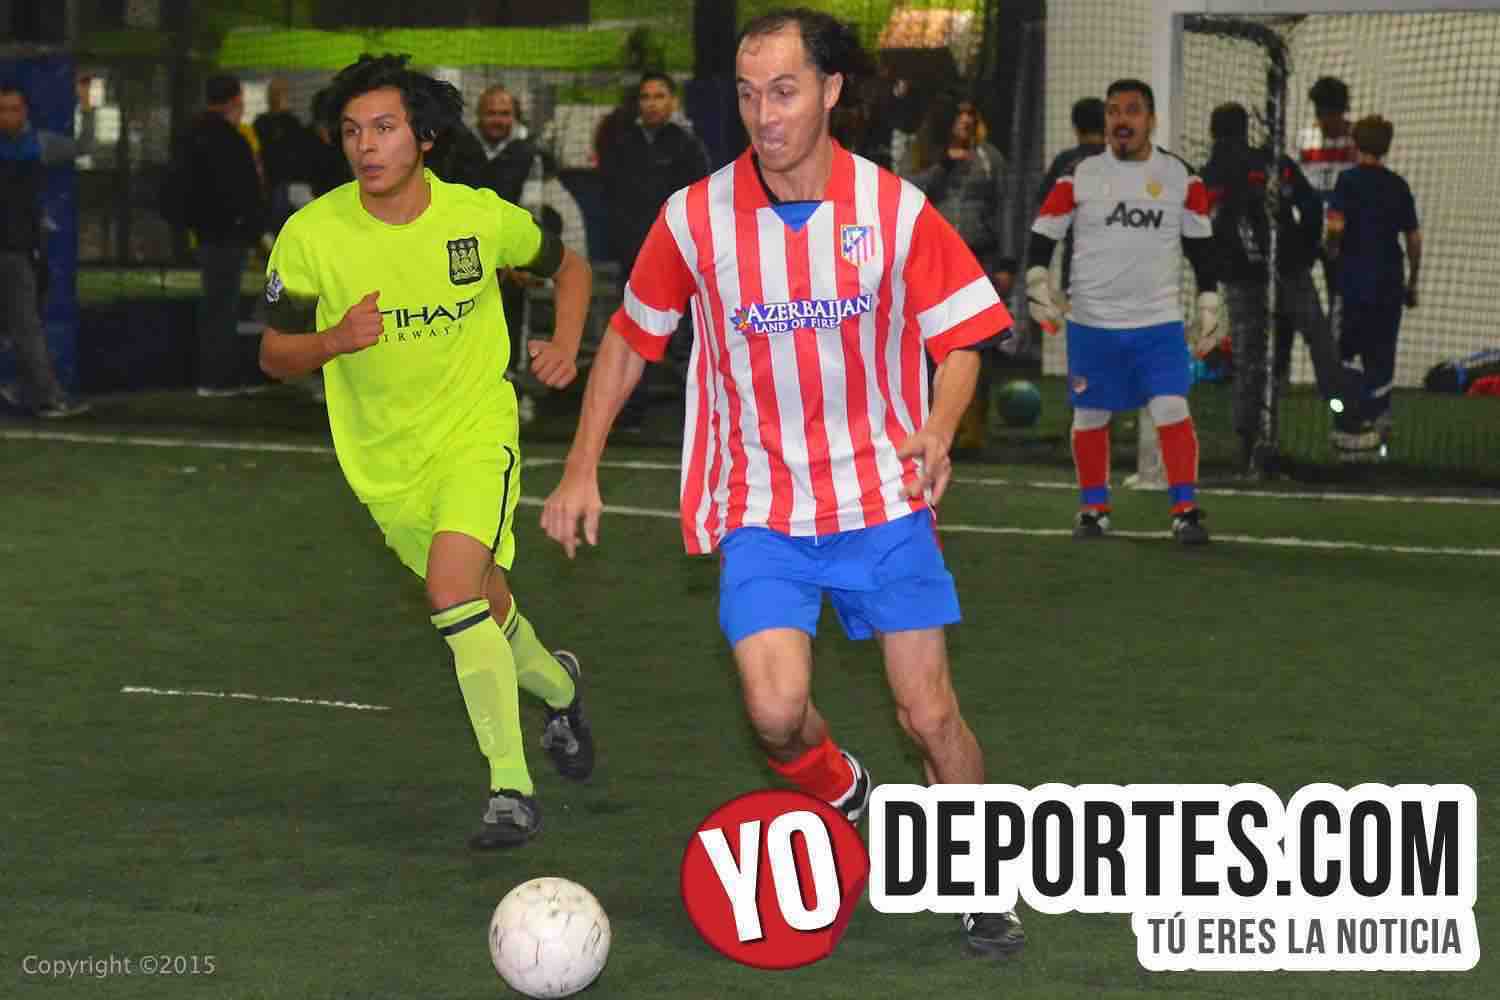 San Juan Cleveland-fuerza Latina Soccer League